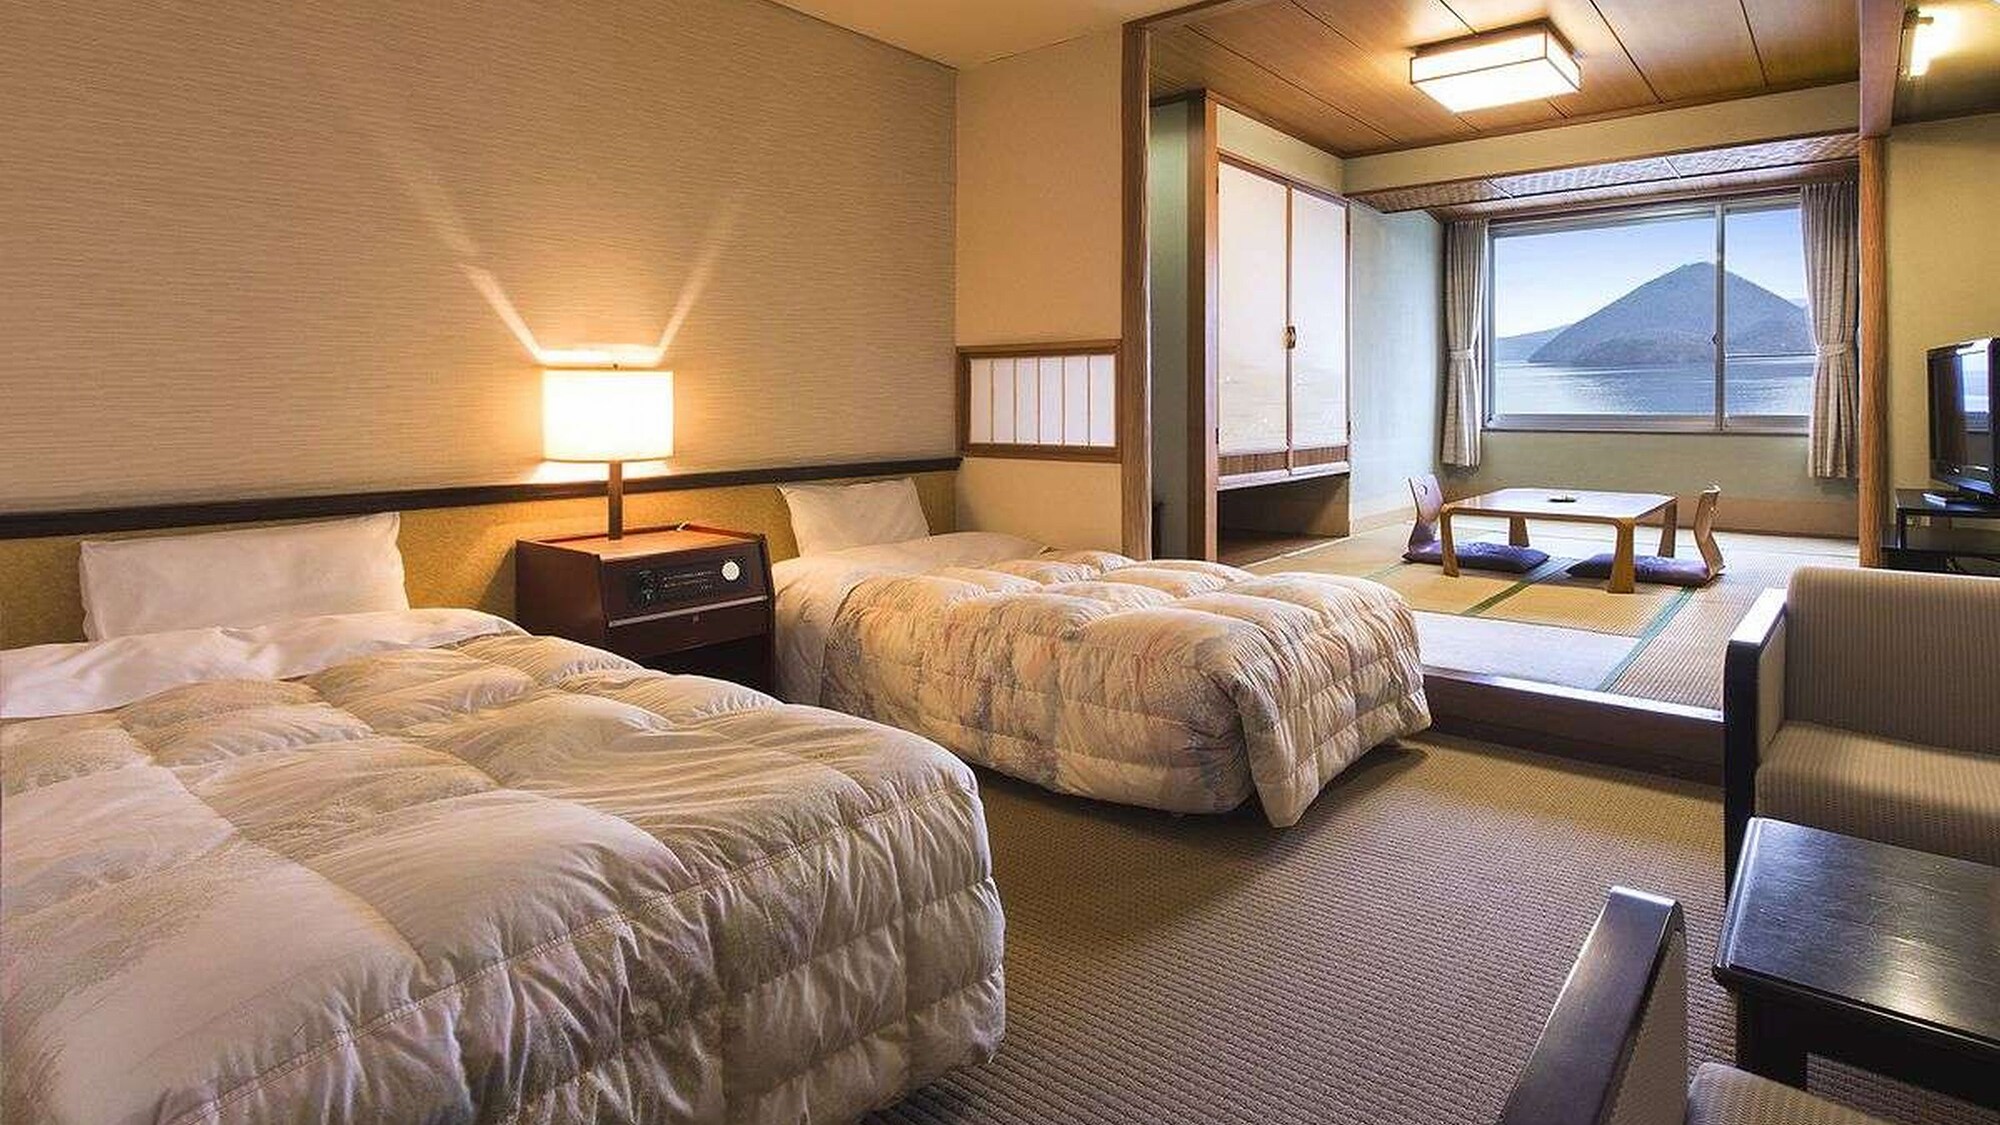 ห้องญี่ปุ่นและตะวันตกริมทะเลสาบ